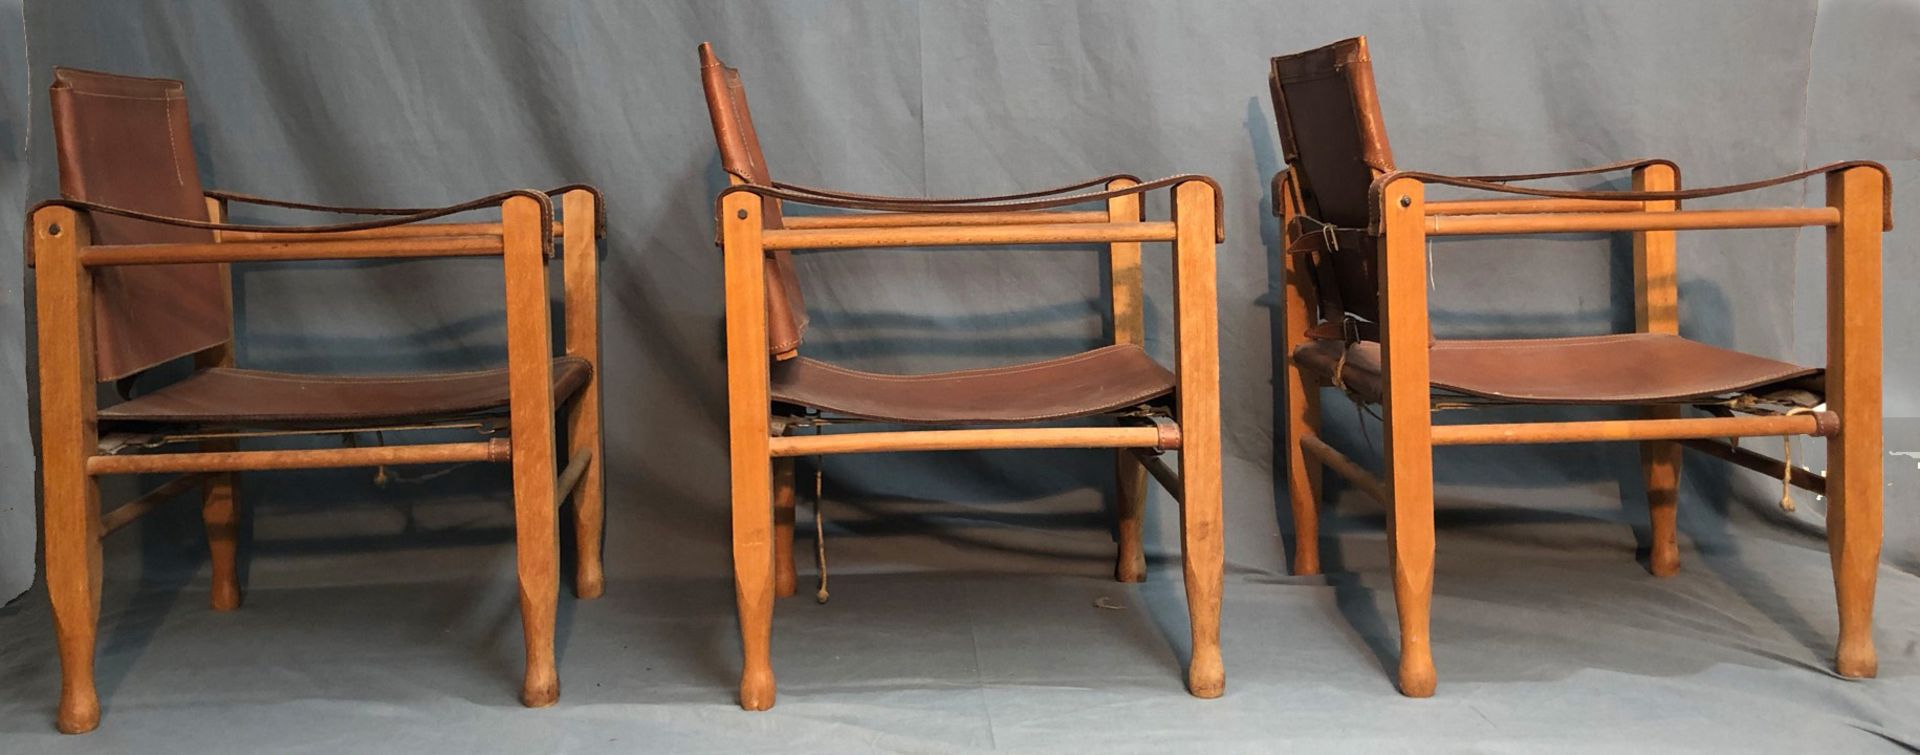 3 Safari Chair. Leder und Holz. Wohl Design von Wilhelm KIENZLE (1886-1958). - Image 8 of 13